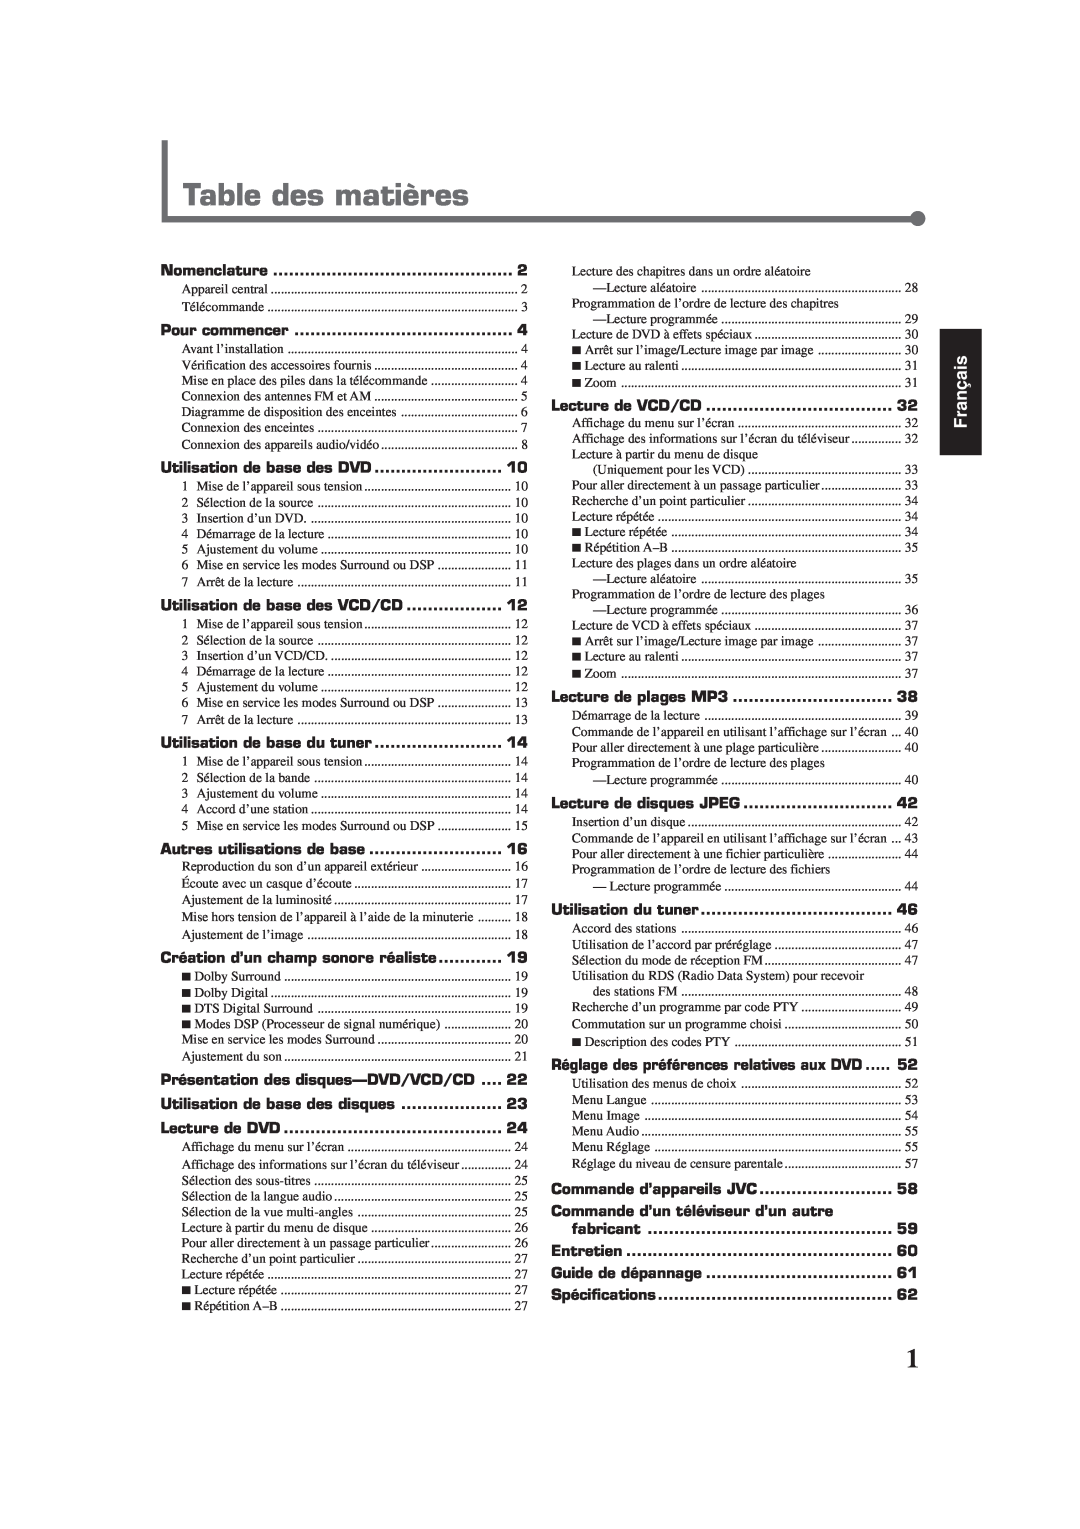 Lennox Hearth TH-A35 Table des matières, Français, Nomenclature, Pour commencer, Utilisation de base des DVD, fabricant 